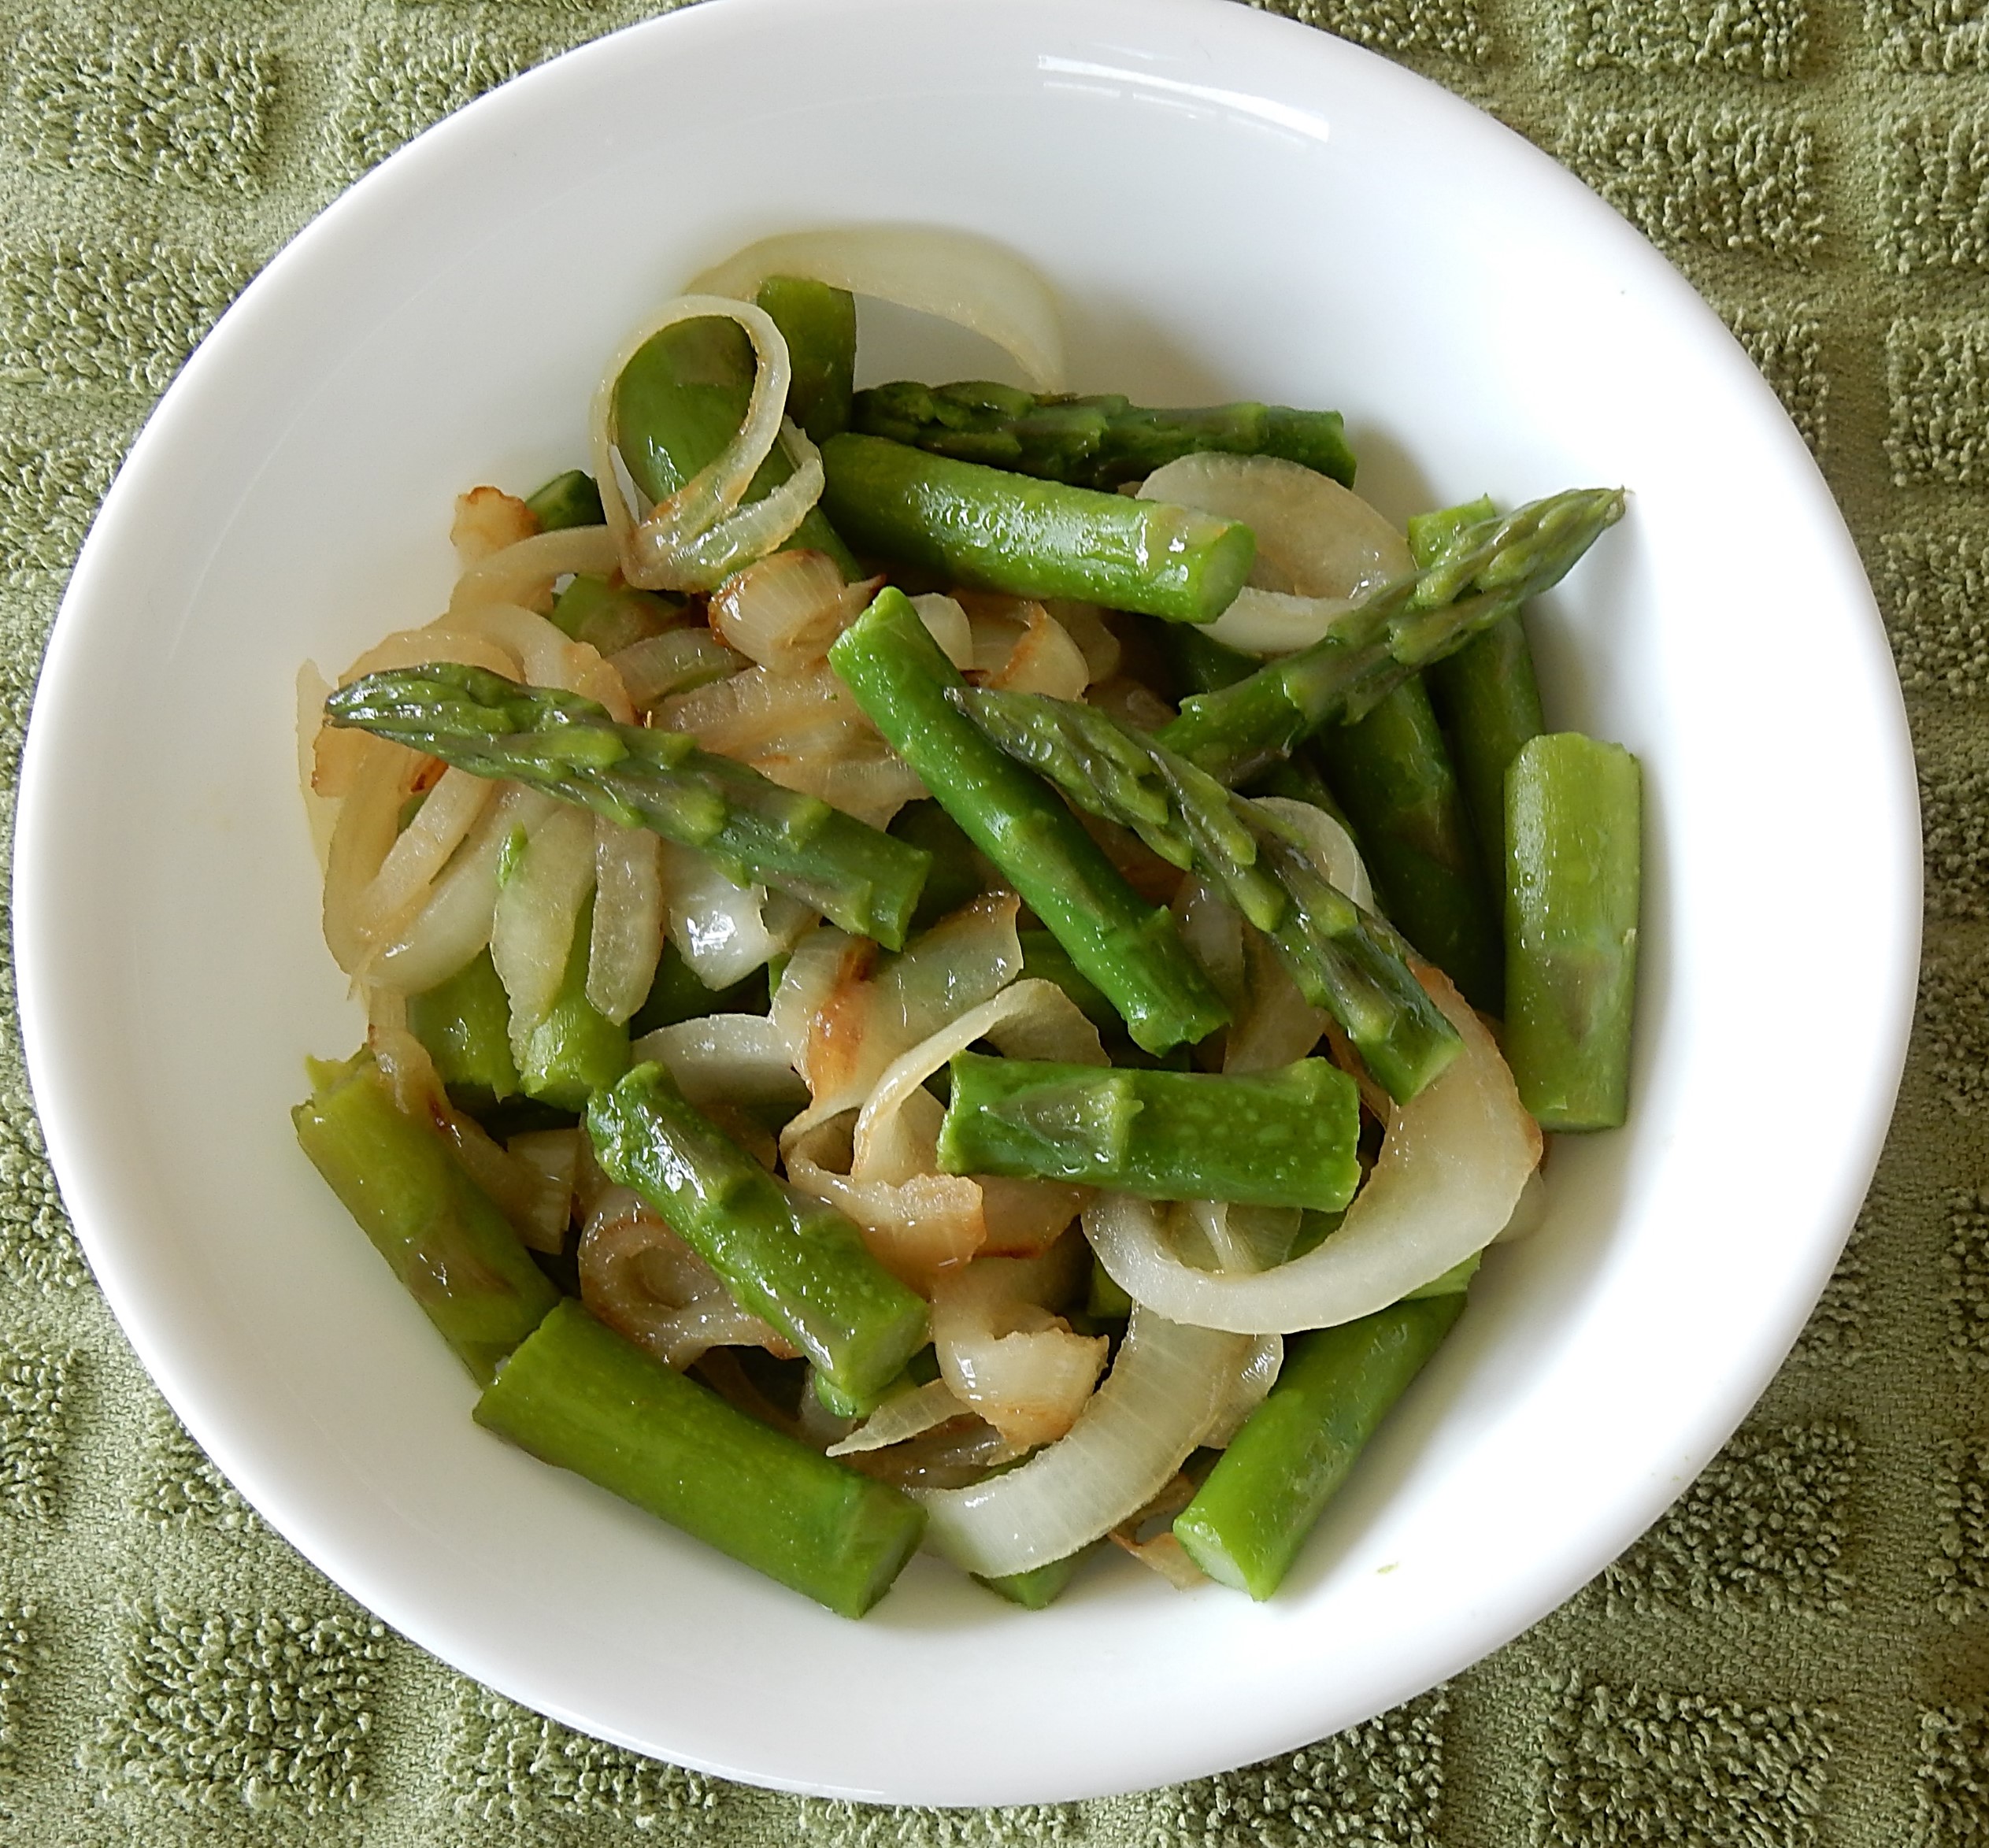 Tasty Asparagus (Asparagus and Onions) in Bowl